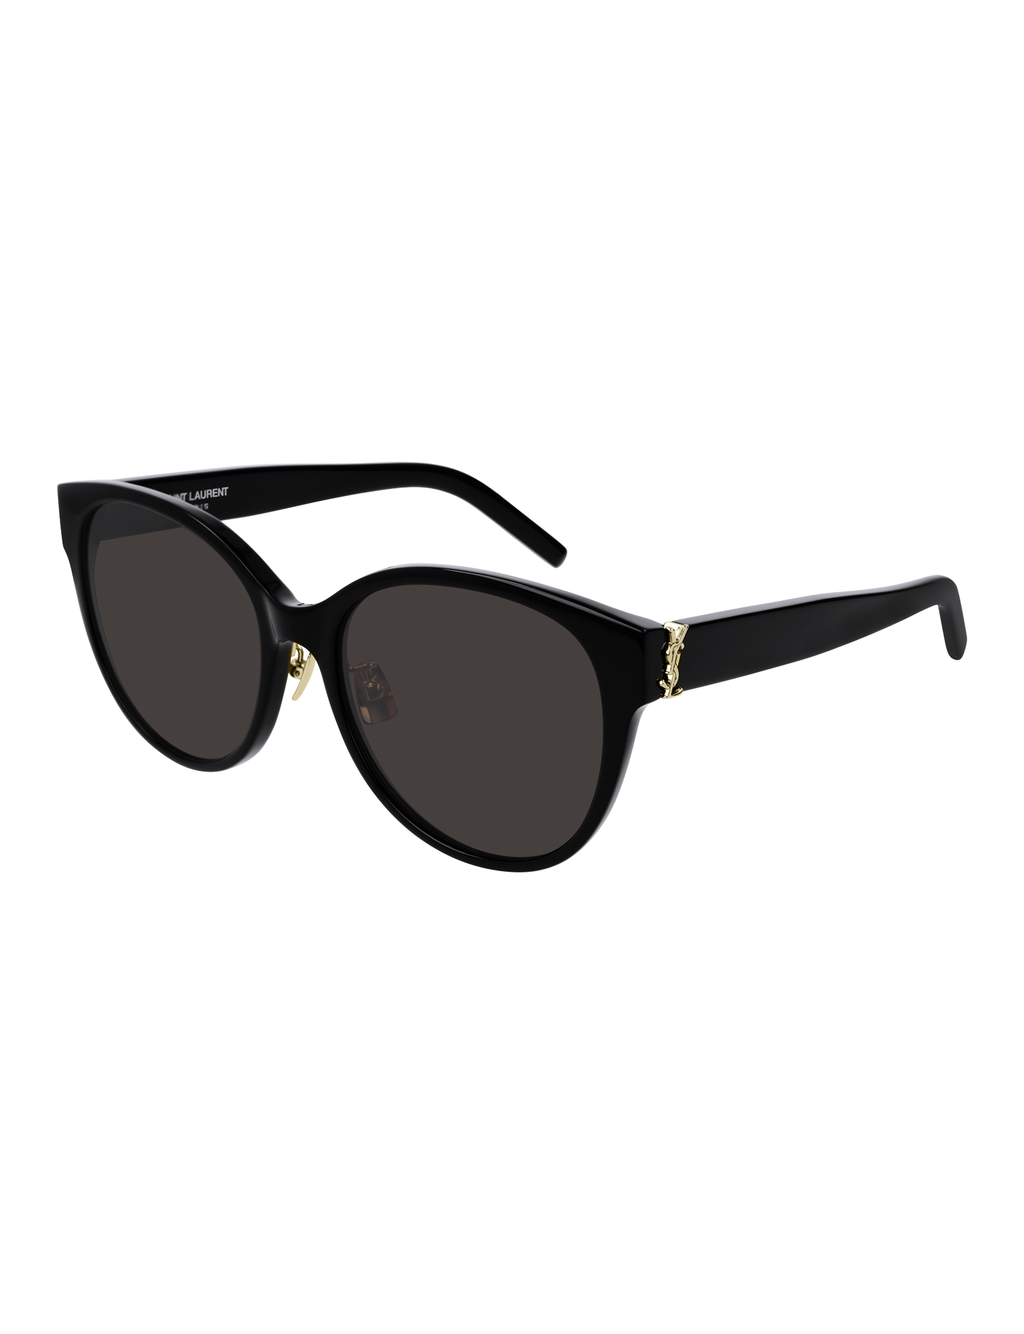 Round Cat Eye Sunglasses, Black